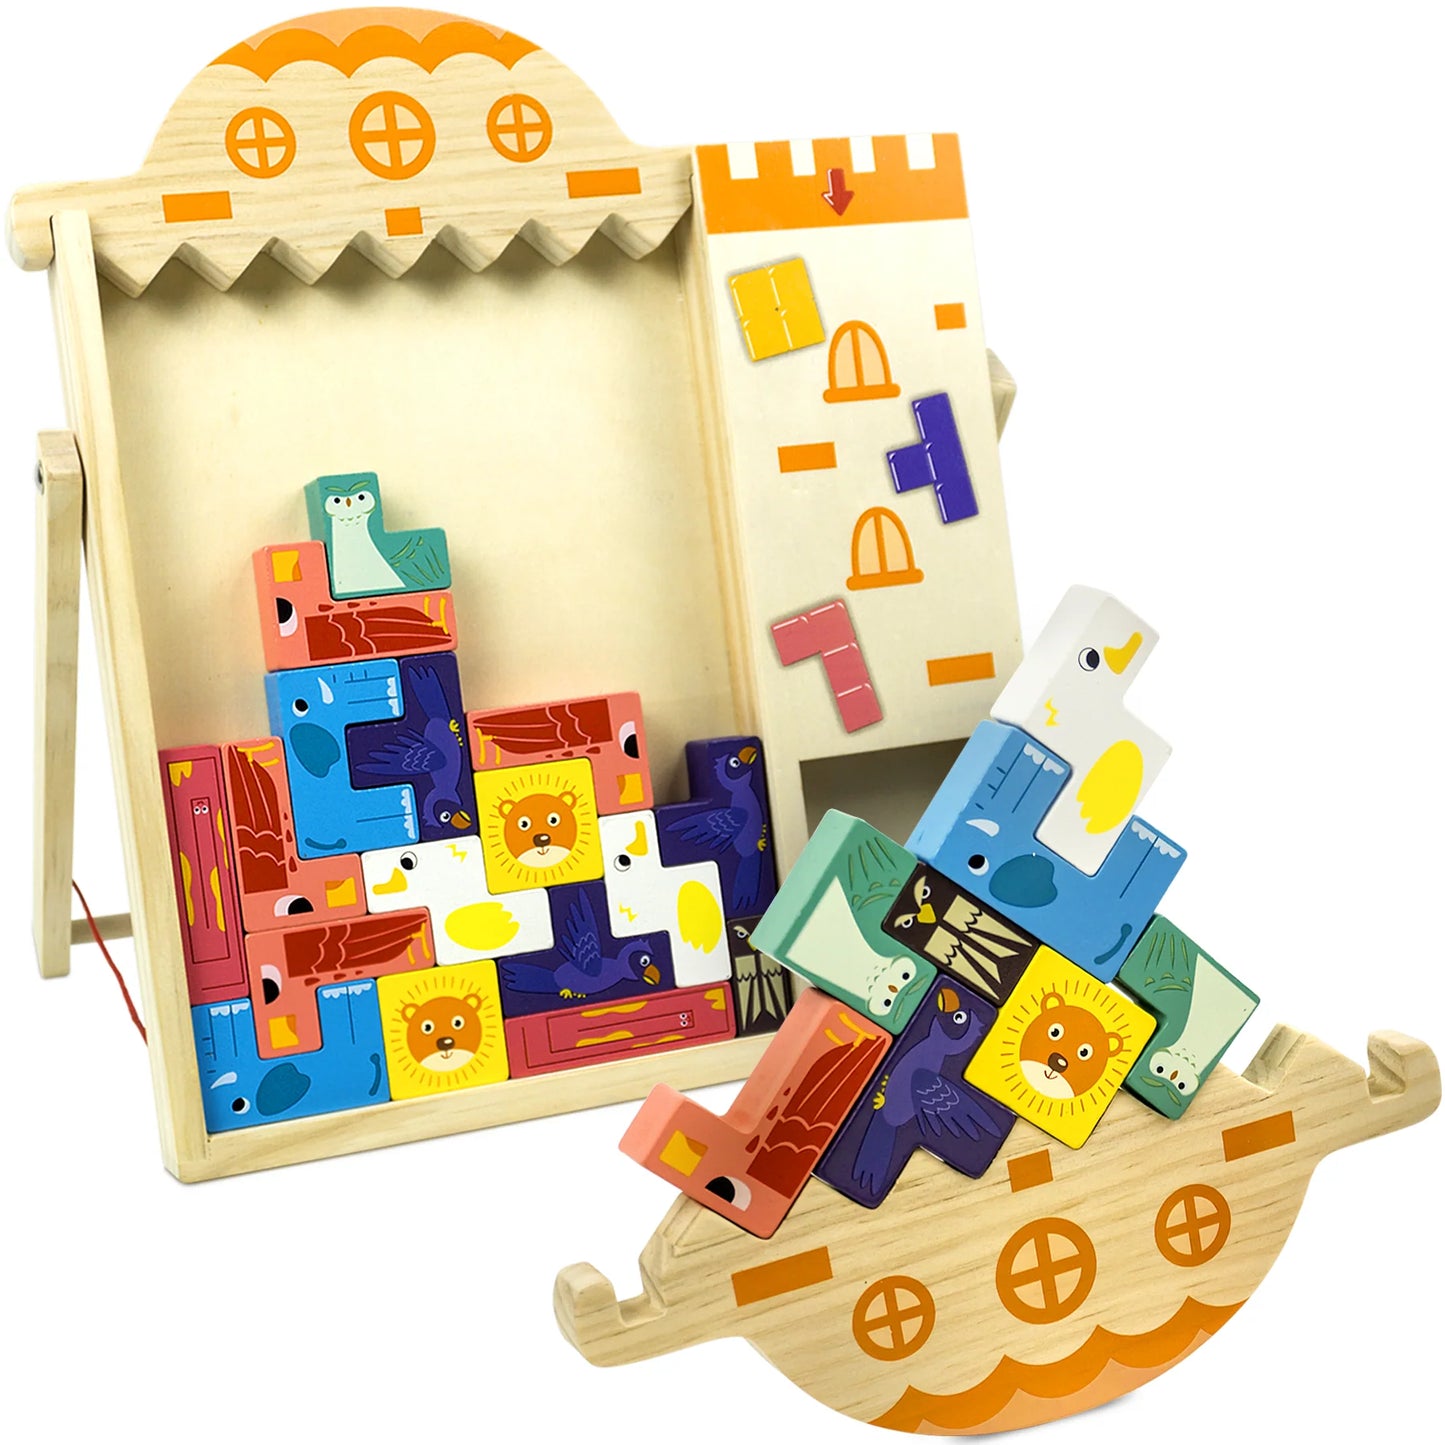 俄羅斯方塊拼圖腦筋急轉彎玩具 
4 合 1 七巧板拼圖 3D 木製俄羅斯積木，平衡堆疊遊戲